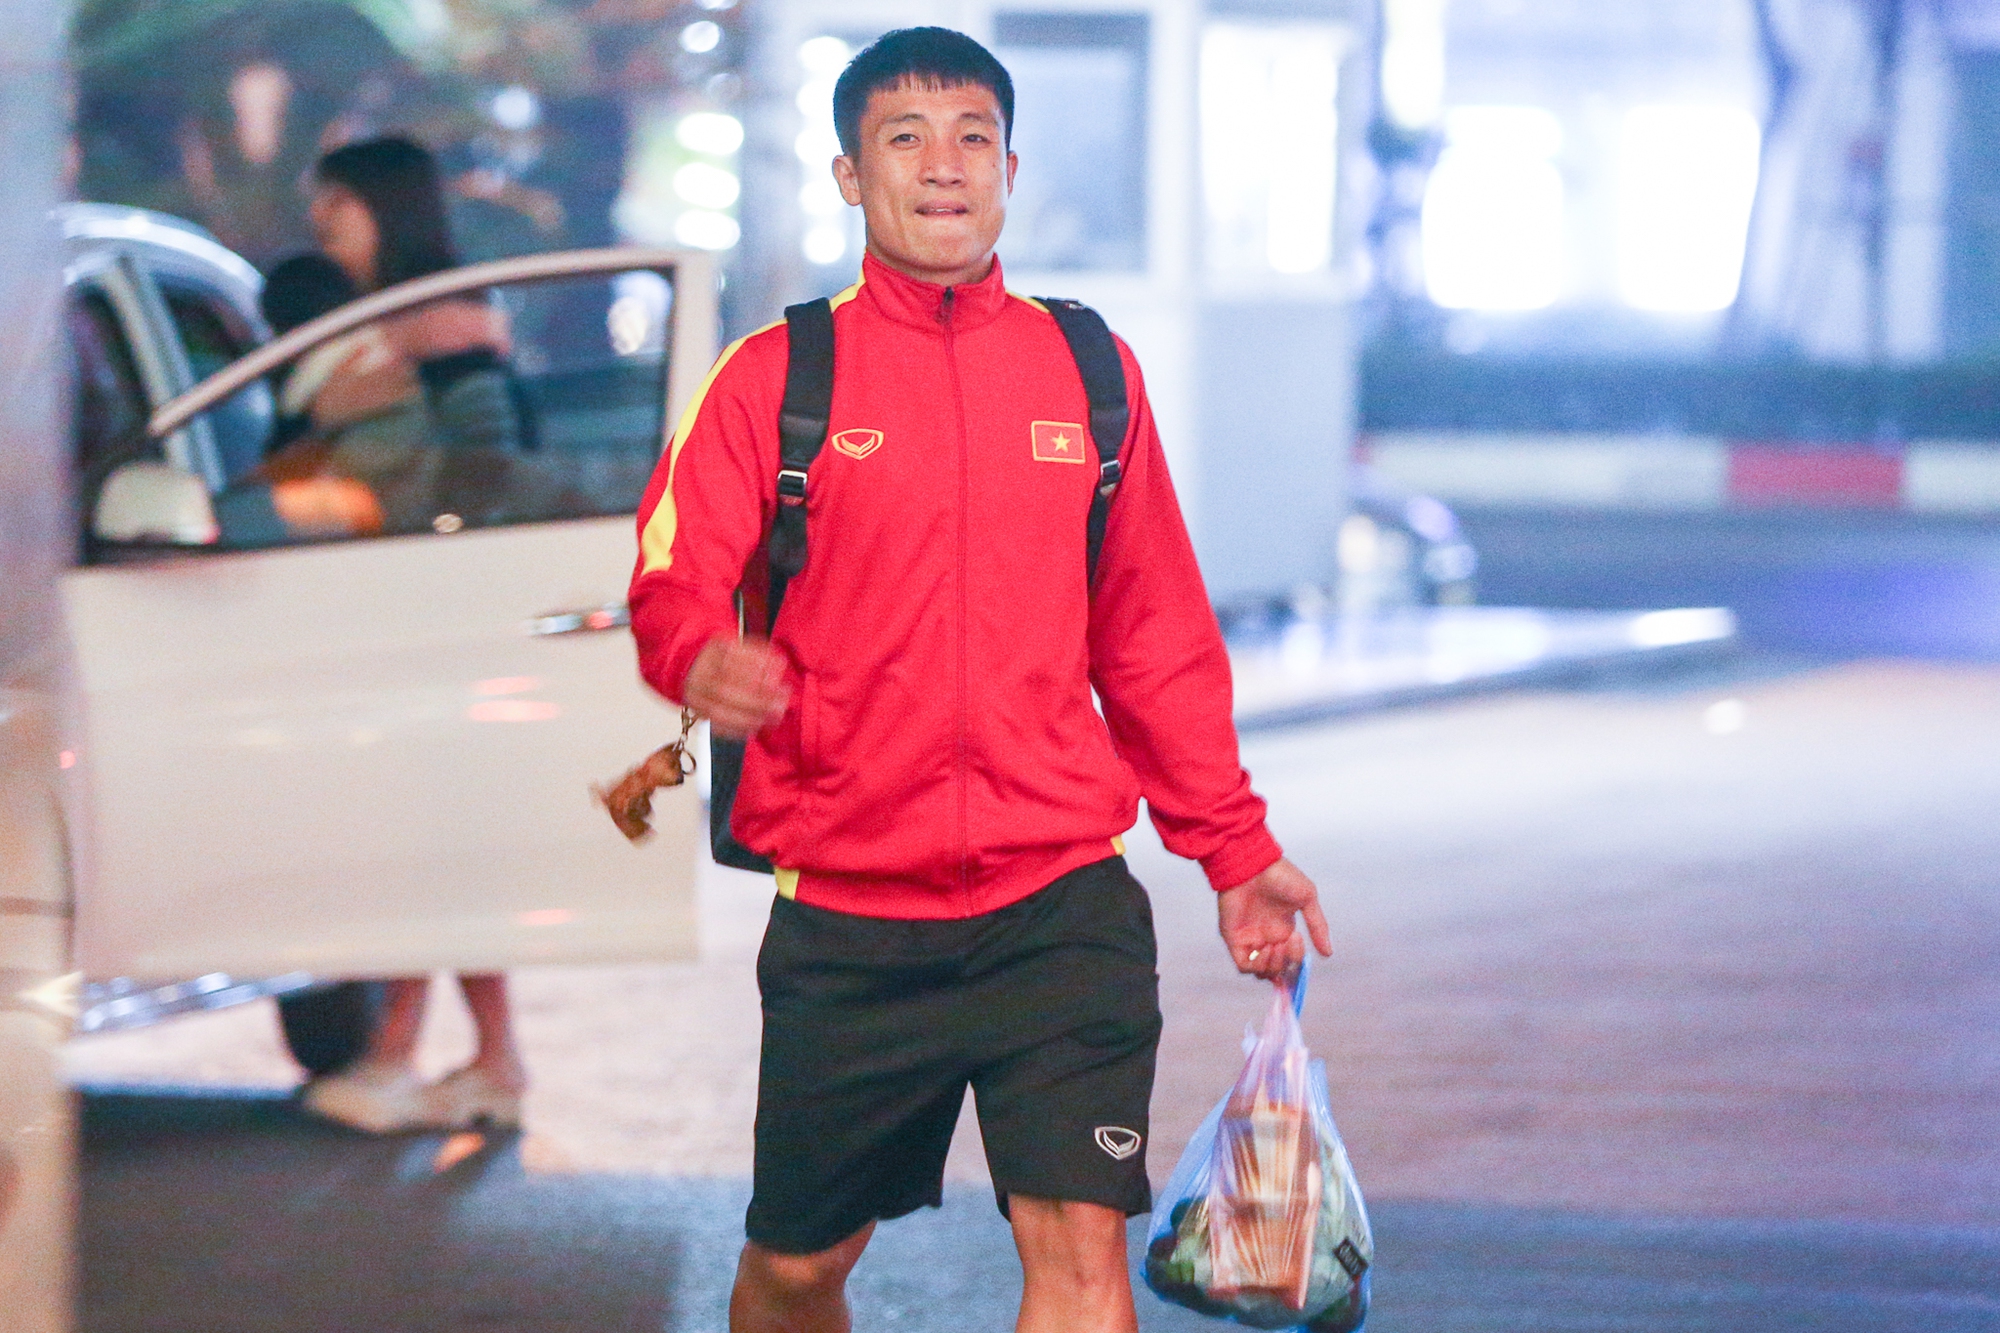 Đội tuyển Việt Nam về tới khách sạn giữa đêm, Bùi Tiến Dũng nhận quà bất ngờ - Ảnh 8.